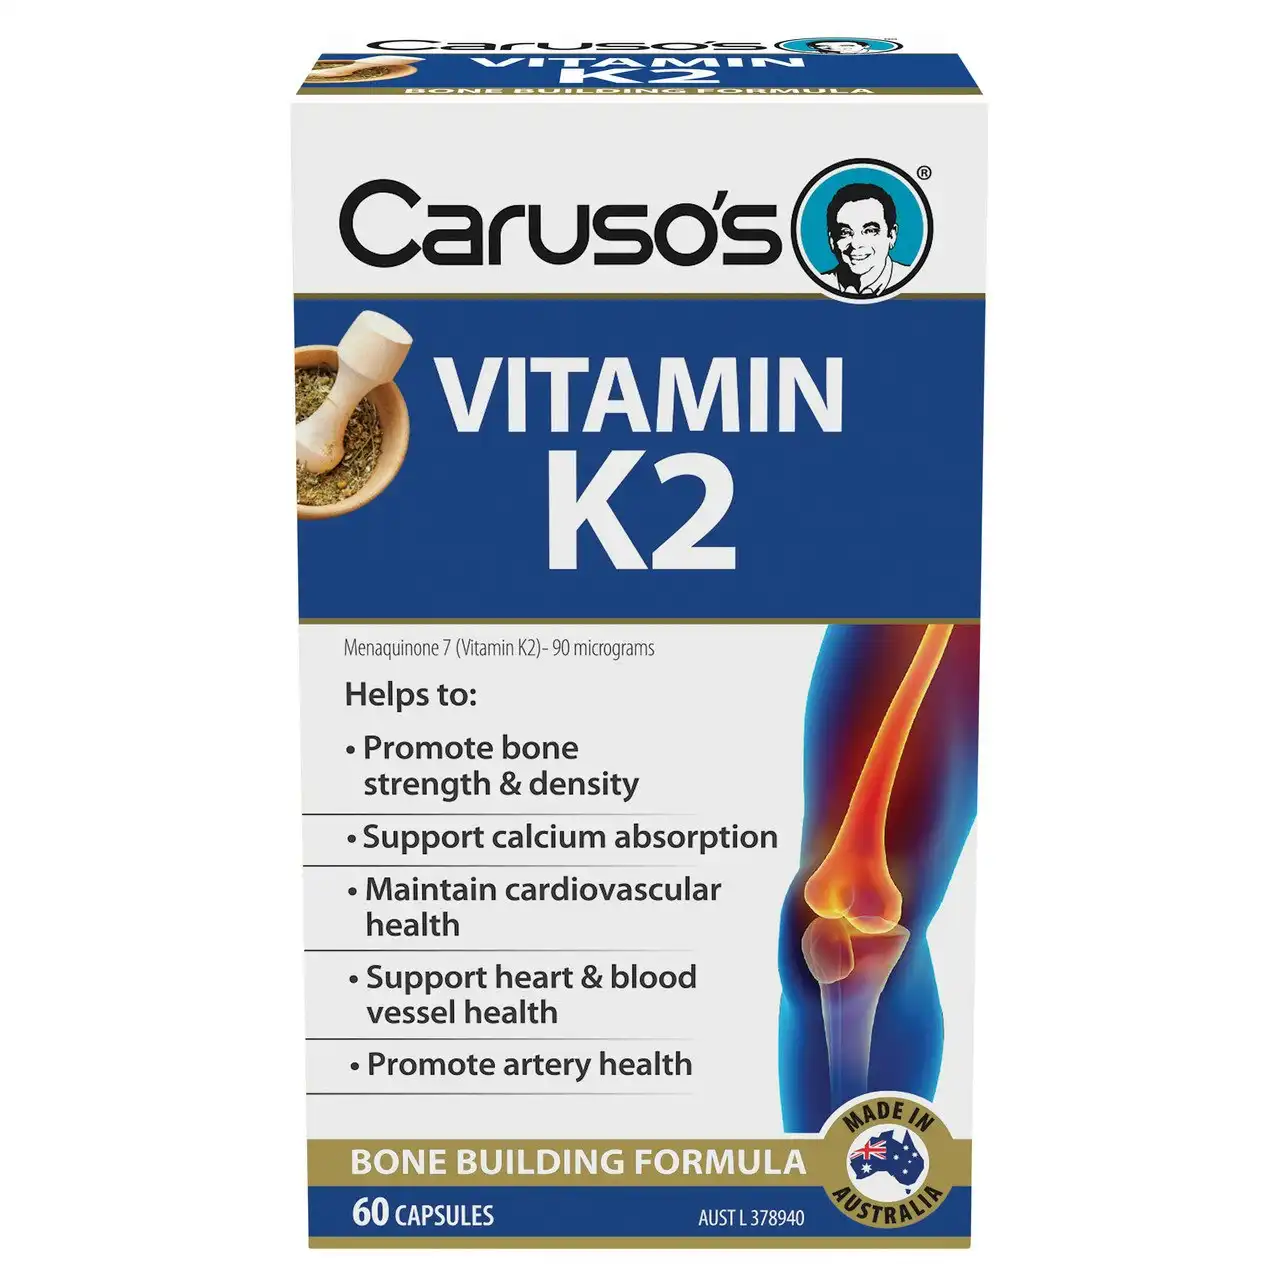 Caruso's Vitamin K2